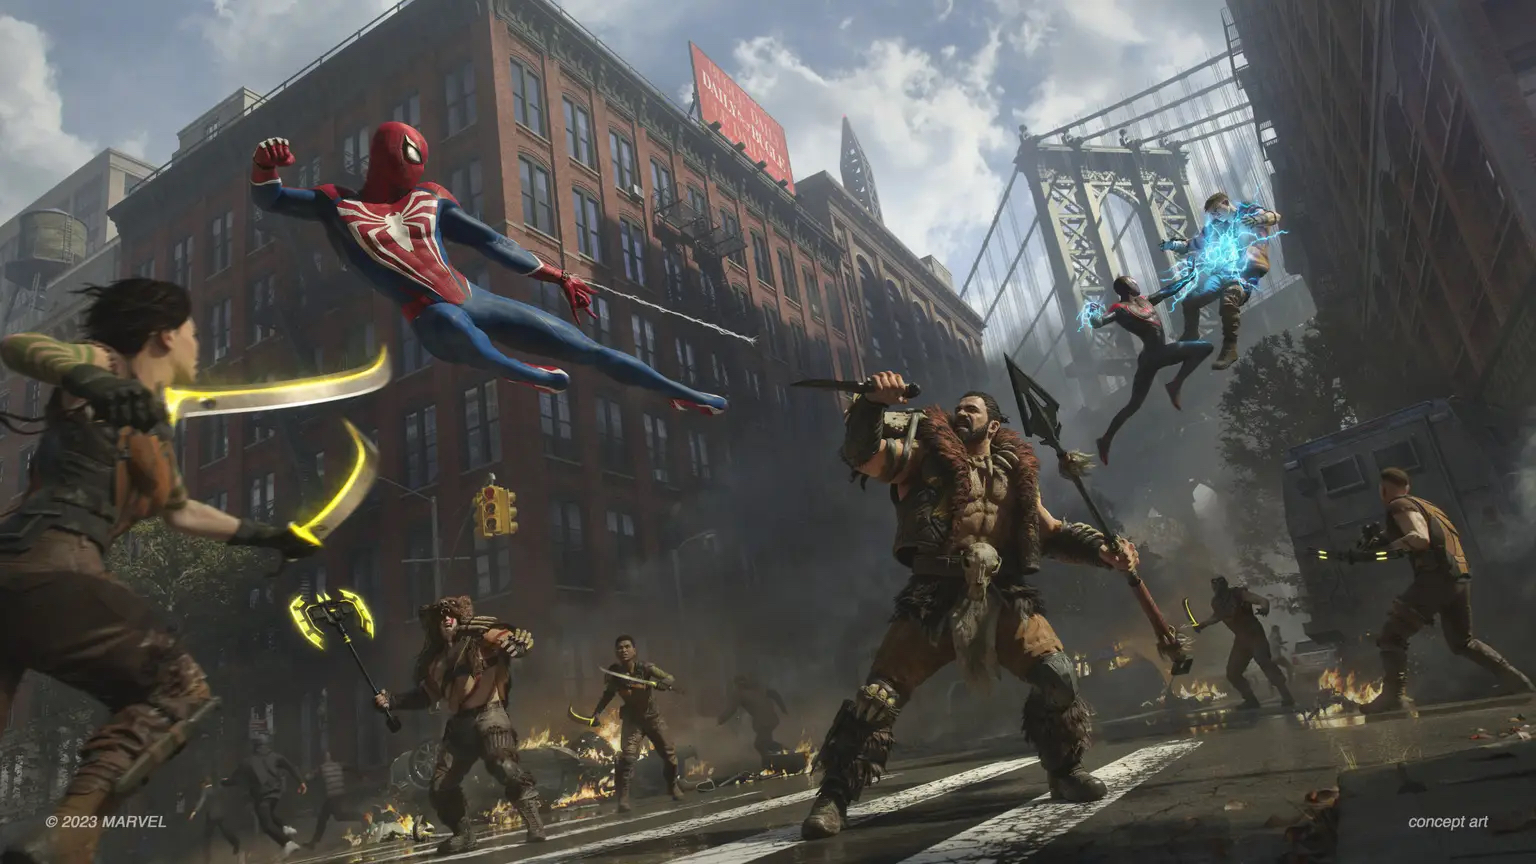 Jogo Marvel's Spider Man 2 PS5 Novo - Fazenda Rio Grande